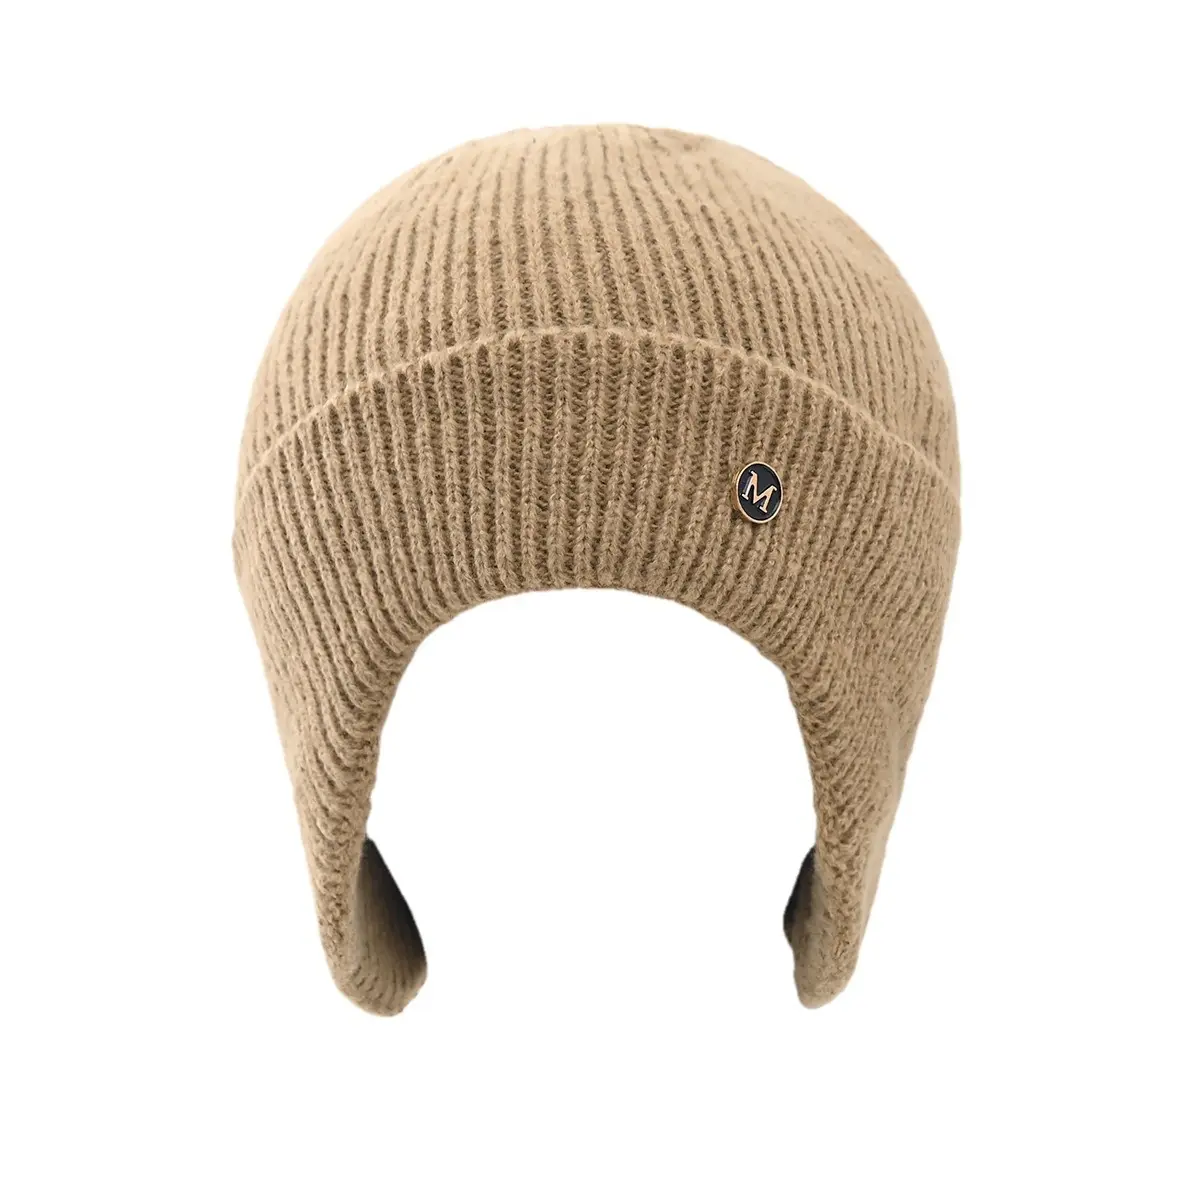 Bonnet de ski d'hiver avec polaire, bonnet en laine chaud pour la protection des oreilles, masque de ski pour jeunes.